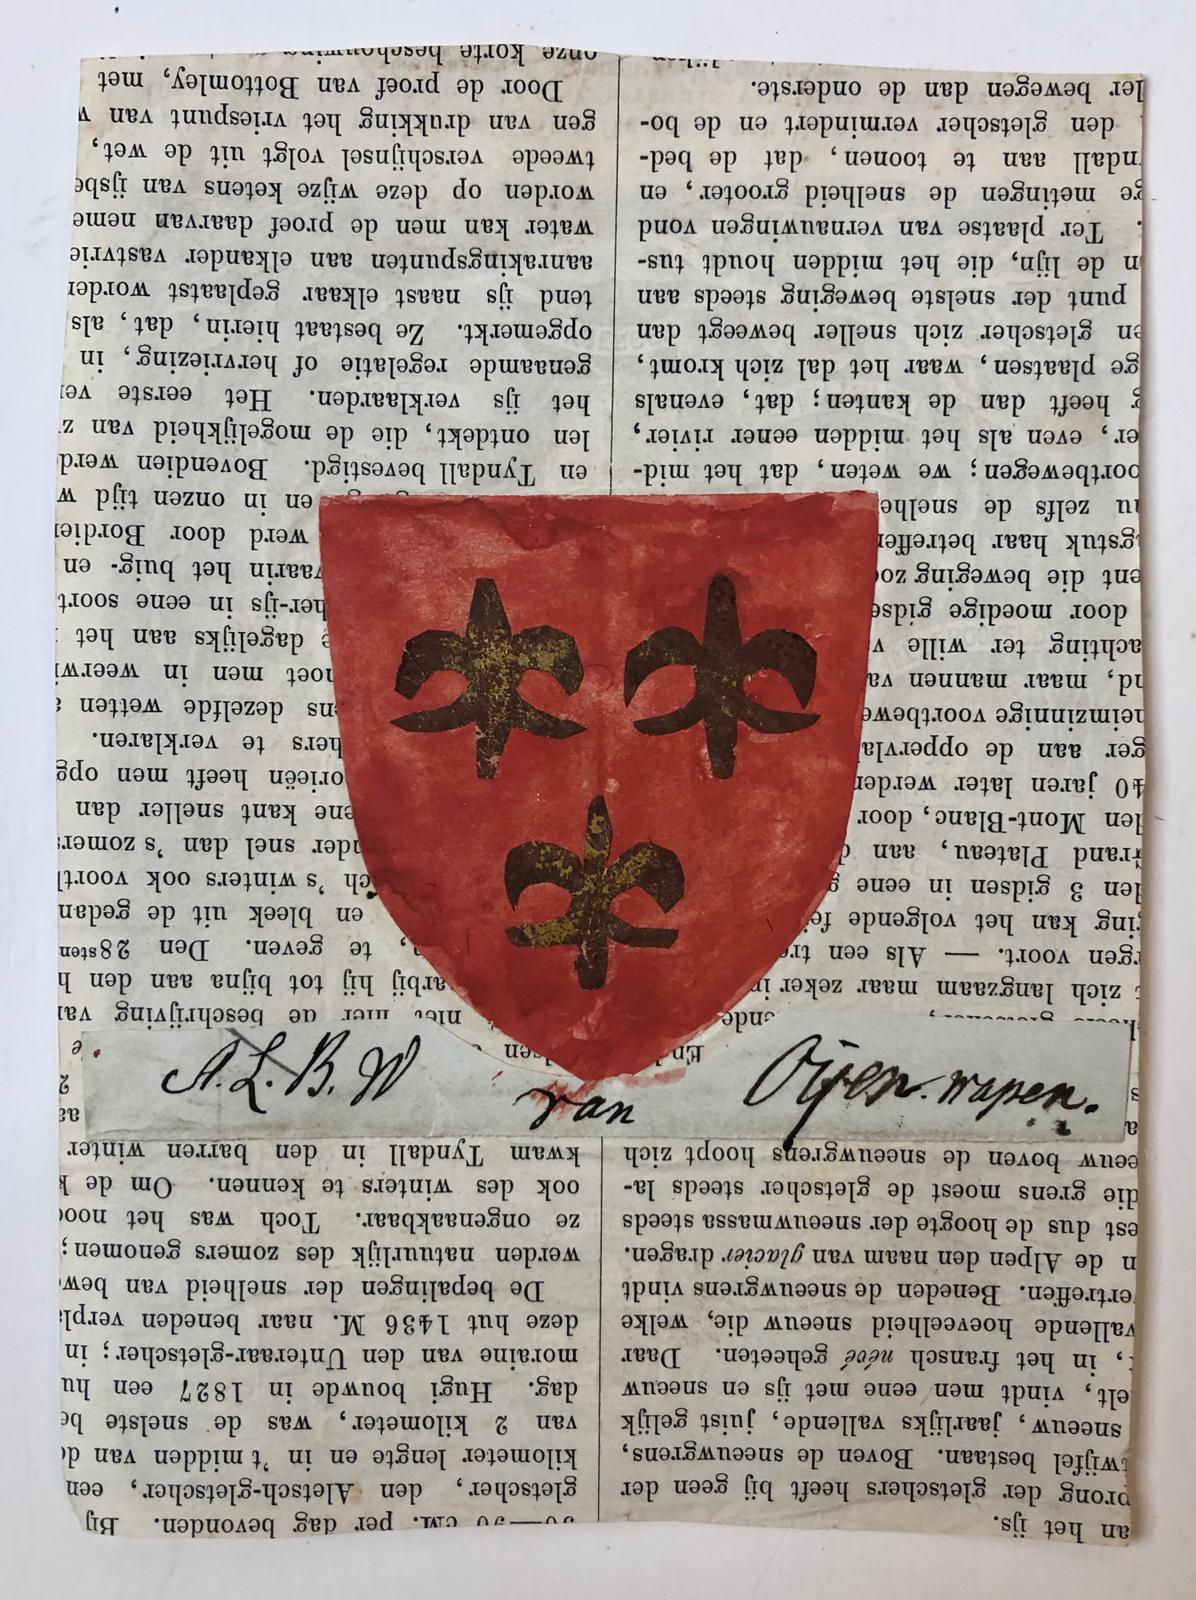 [Coat of arms] Wapen van A.L.B.W. van Oijen (rood met drie 6-puntige gouden sterren), geplakt op achterzijde van een publicatie door A.A. Vorsterman van Oijen.